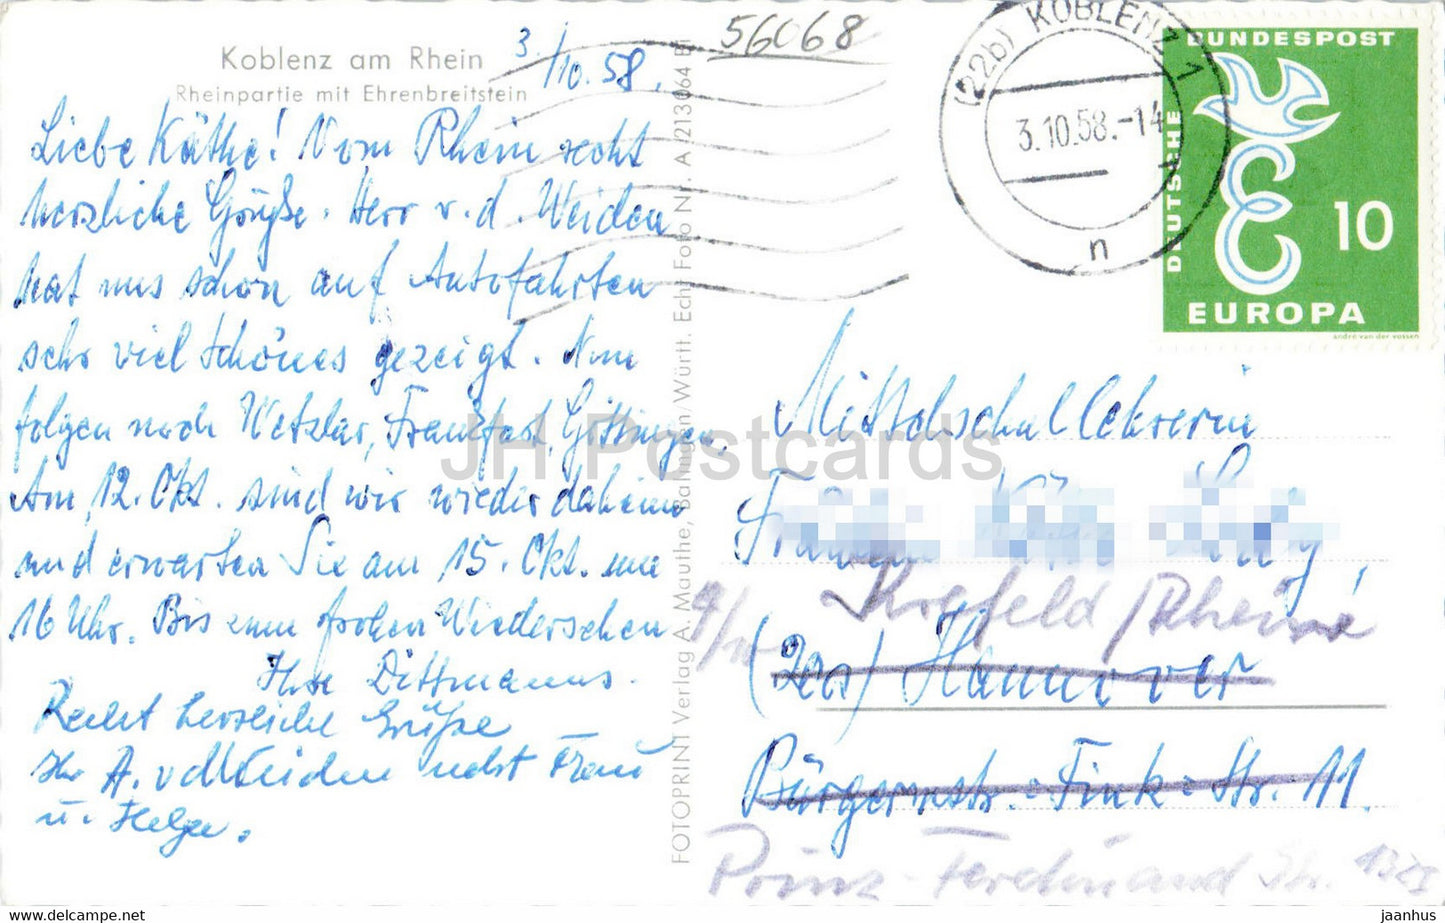 Koblenz am Rhein - Rheinpartie mit Ehrenbreitstein - ship - old postcard - 1958 - Germany - used